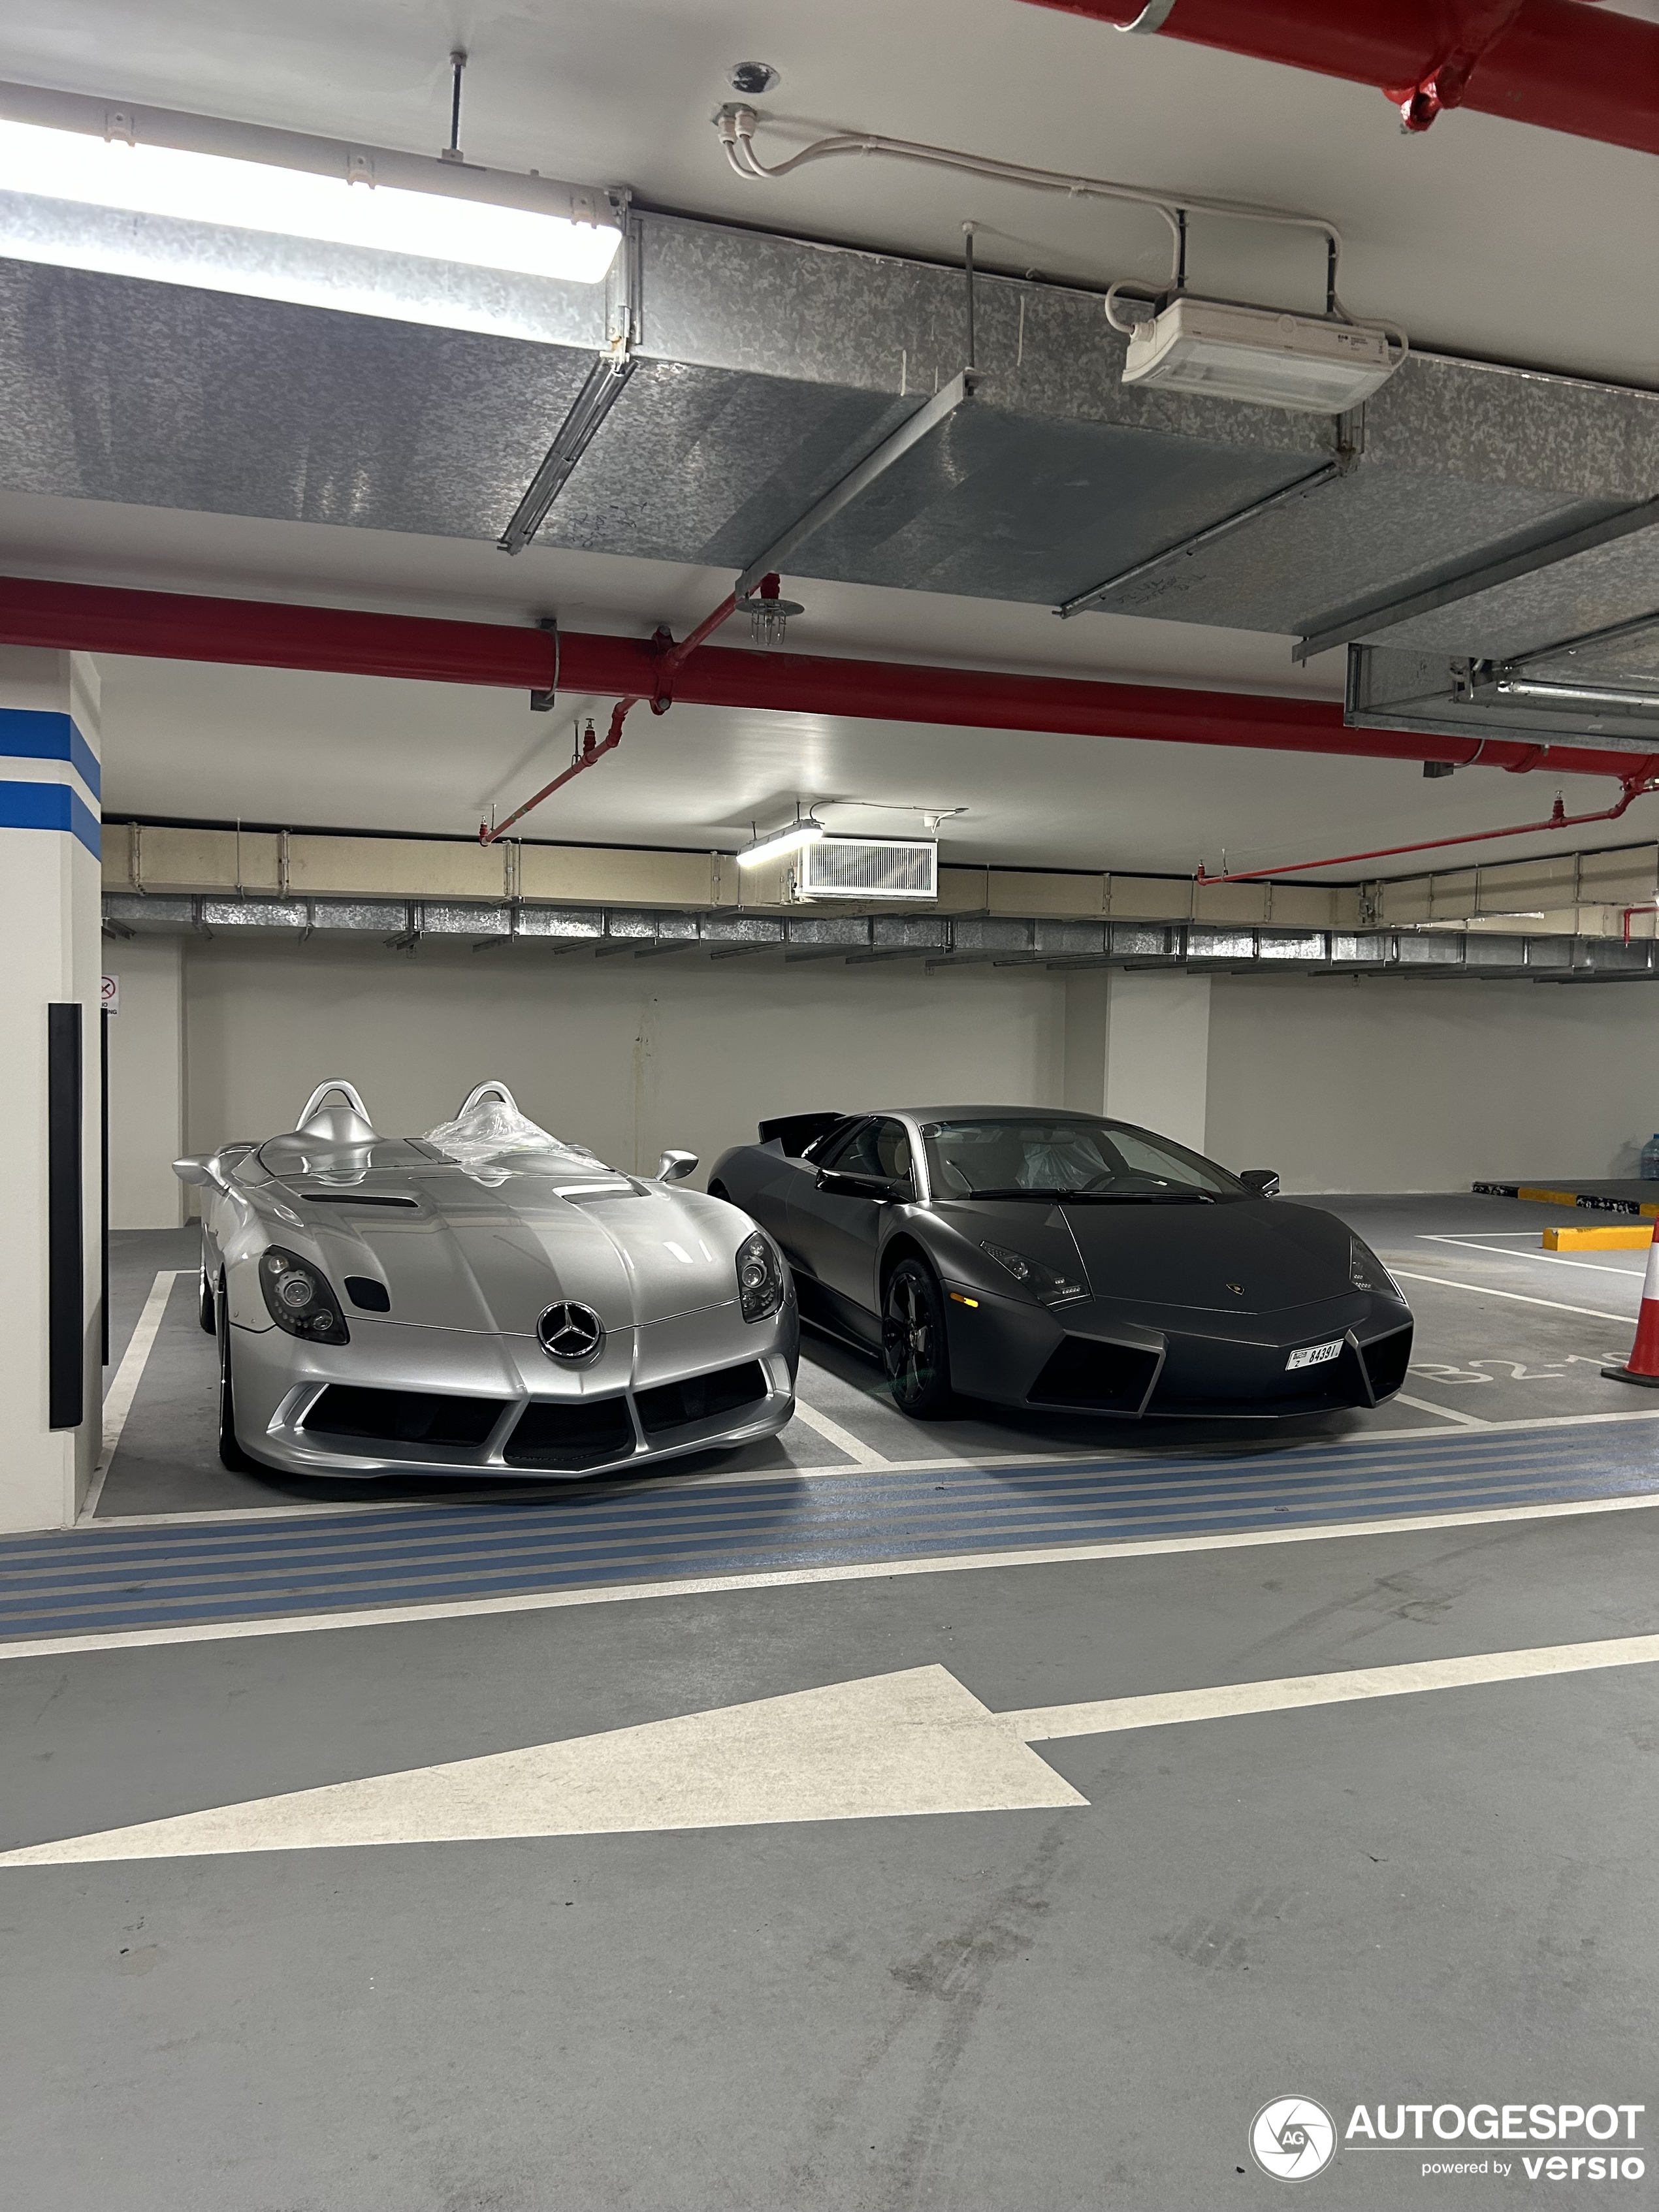 Dva legendarna automobila stoje zajedno u podzemnoj garaži u Dubaiju.